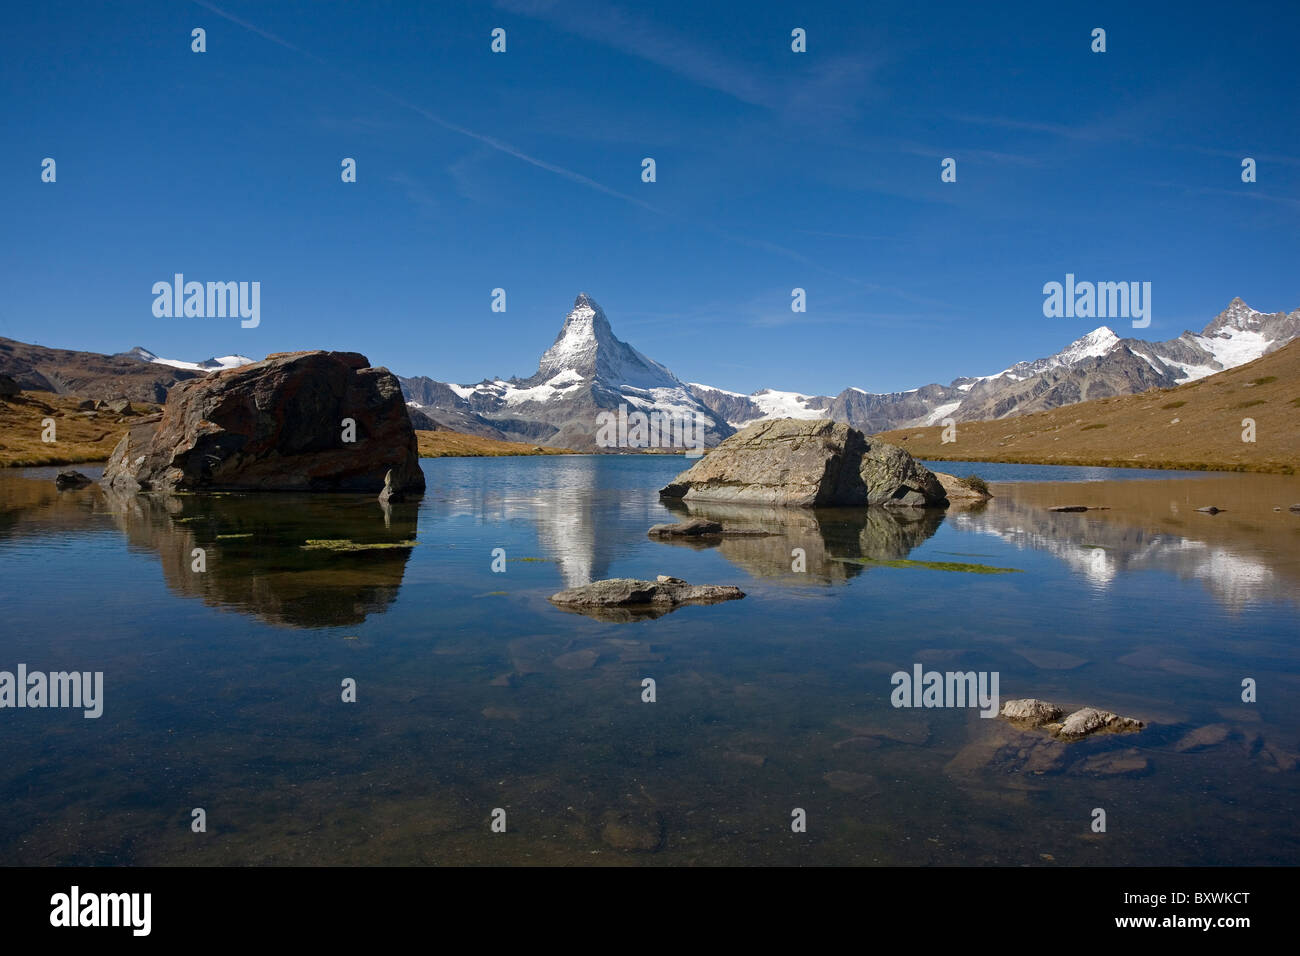 Matterhorn and the Stellisee lake, Fluhalp, Switzerland Stock Photo